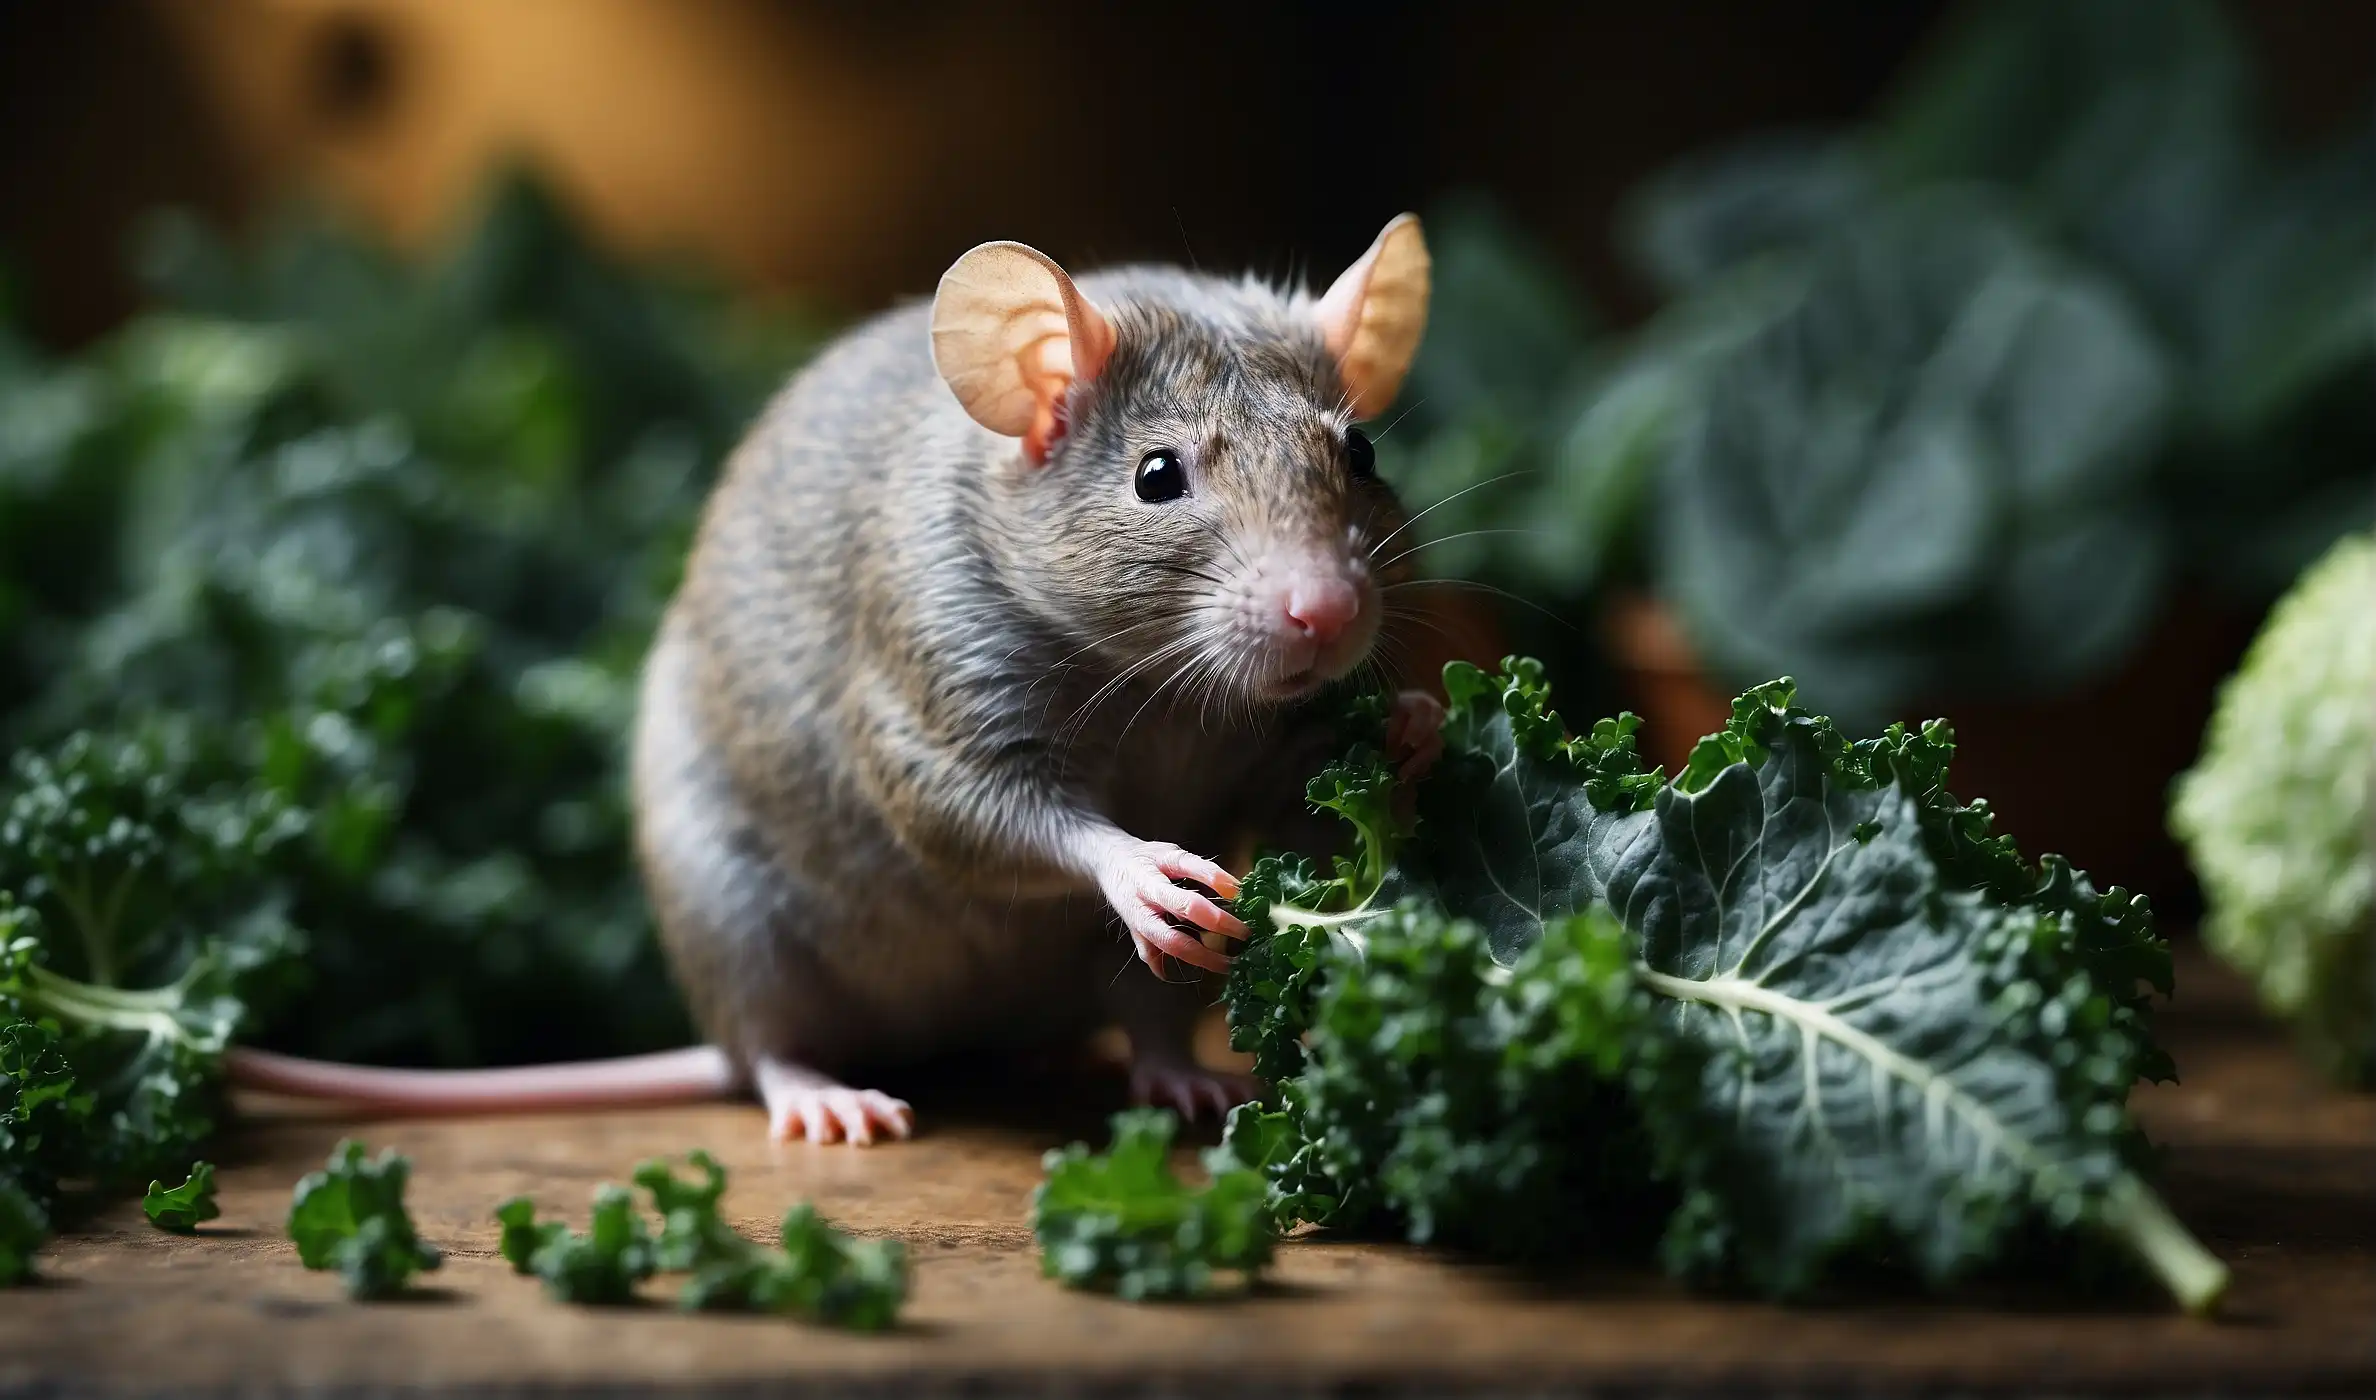 rats have kale